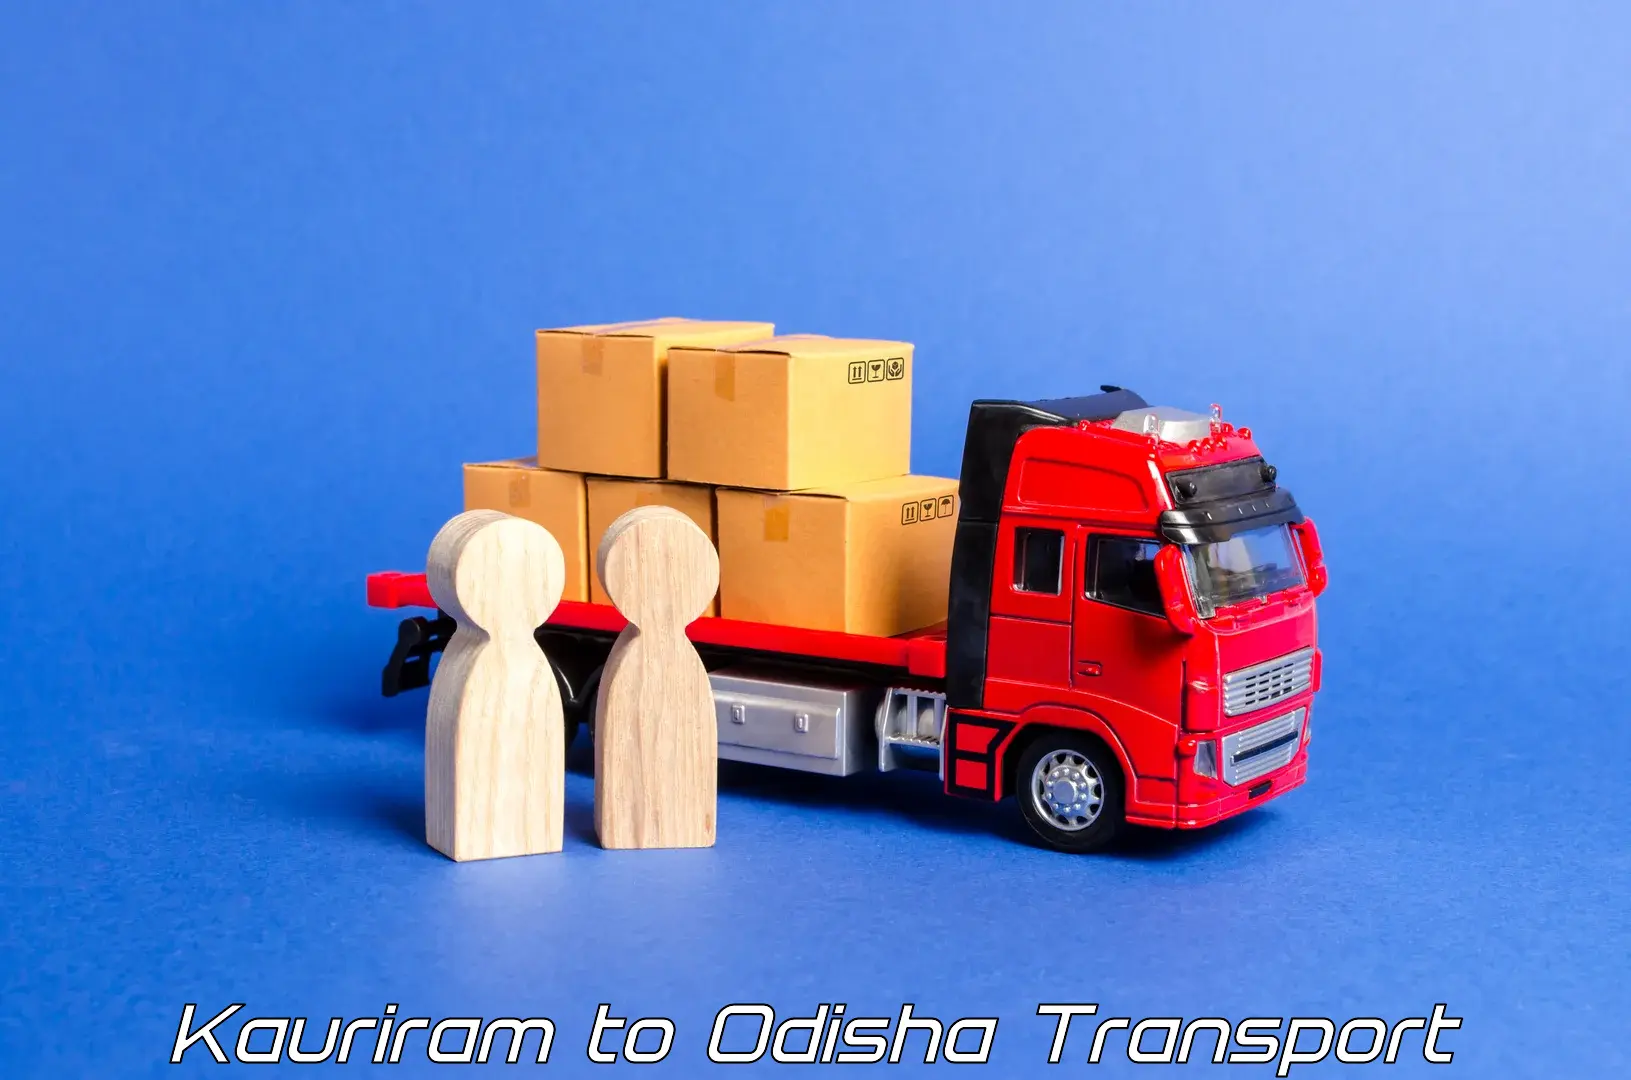 Goods transport services Kauriram to Cuttack